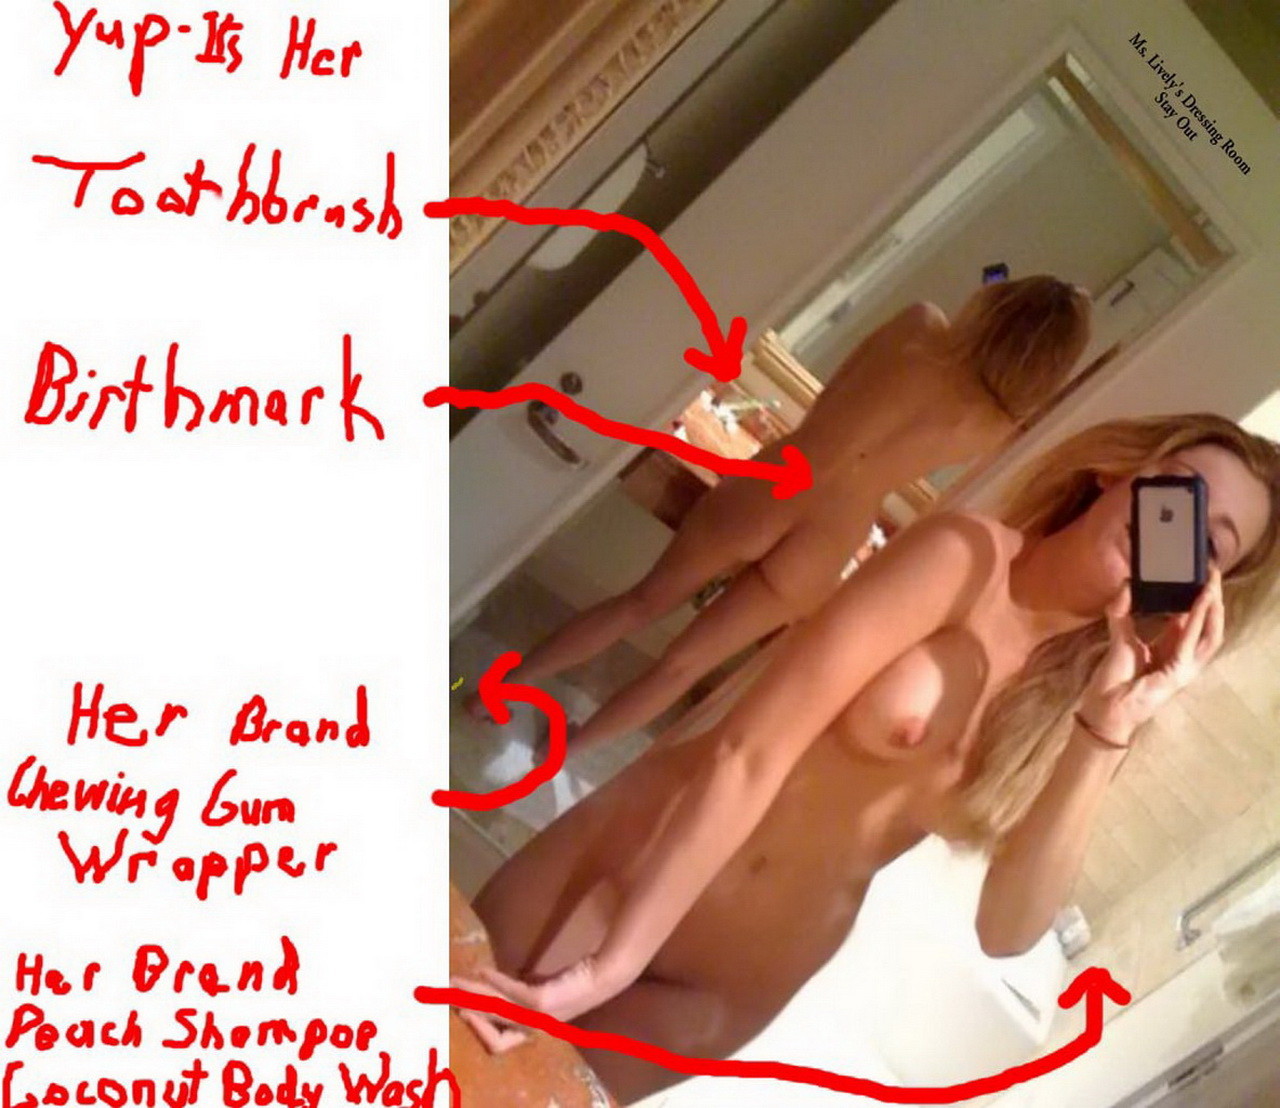 Blake vivace trapelato nudo foto dal suo iphone una prova di autenticità
 #75302071